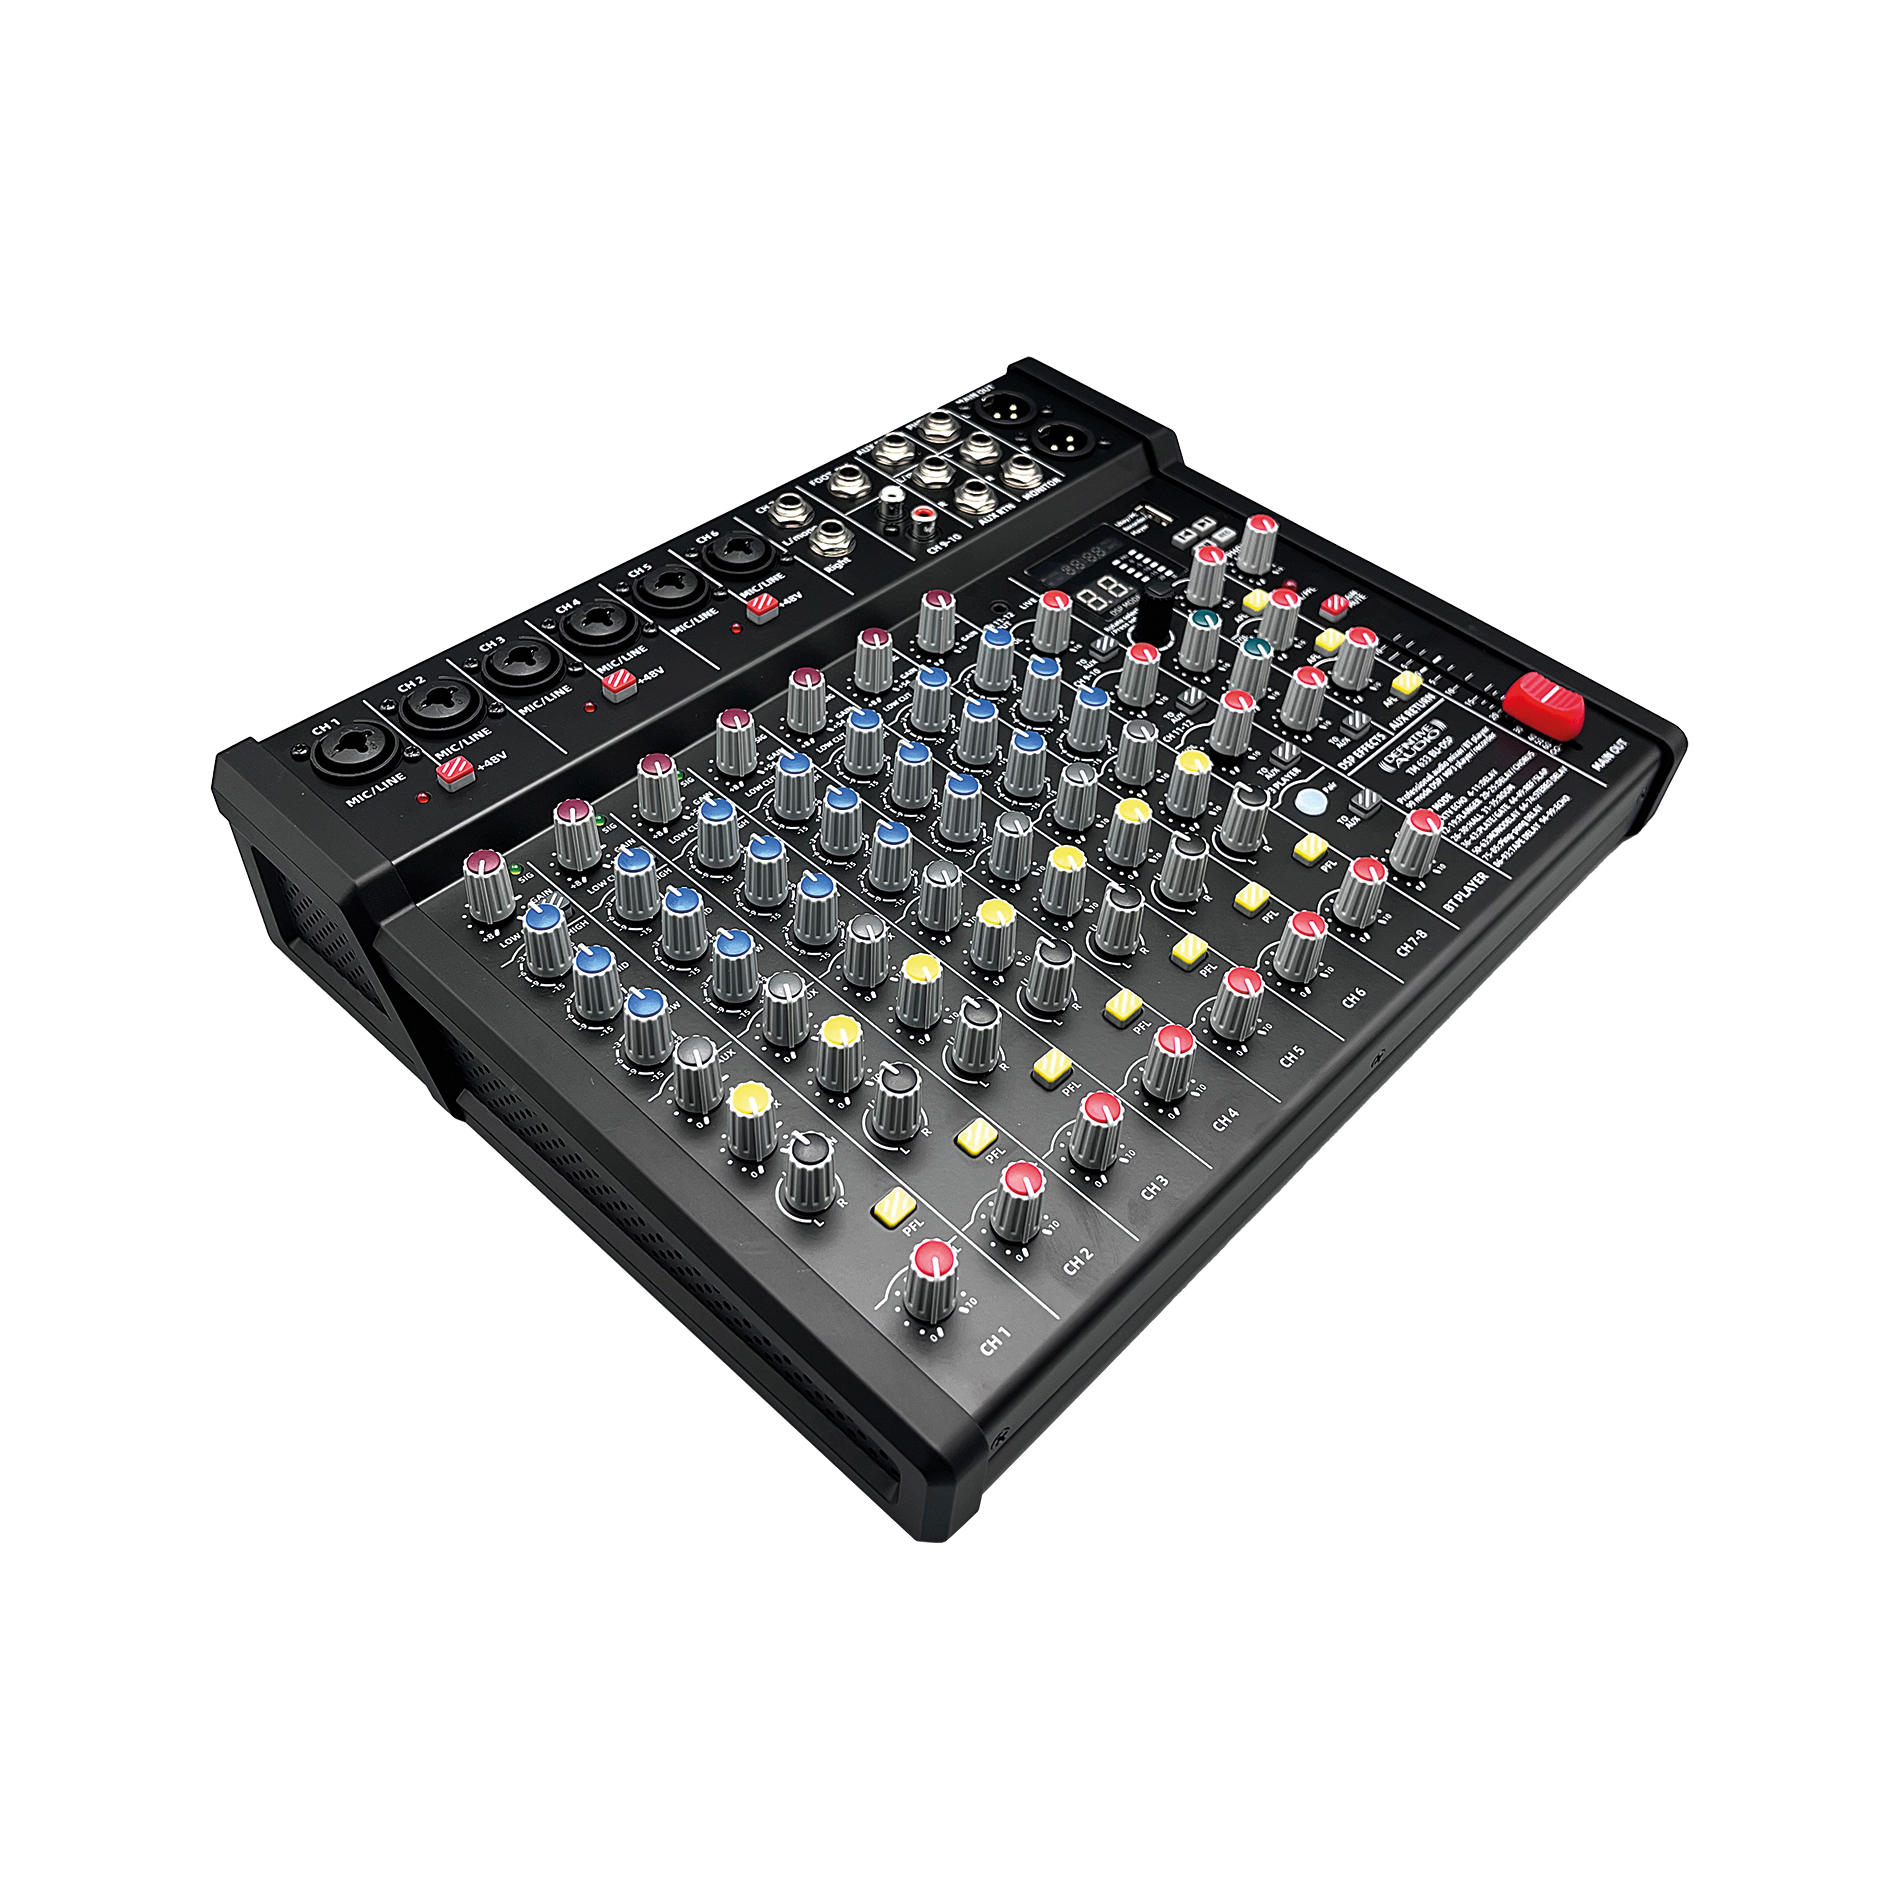 Definitive Audio Tm 633 Bu-dsp - Table De Mixage Analogique - Variation 2